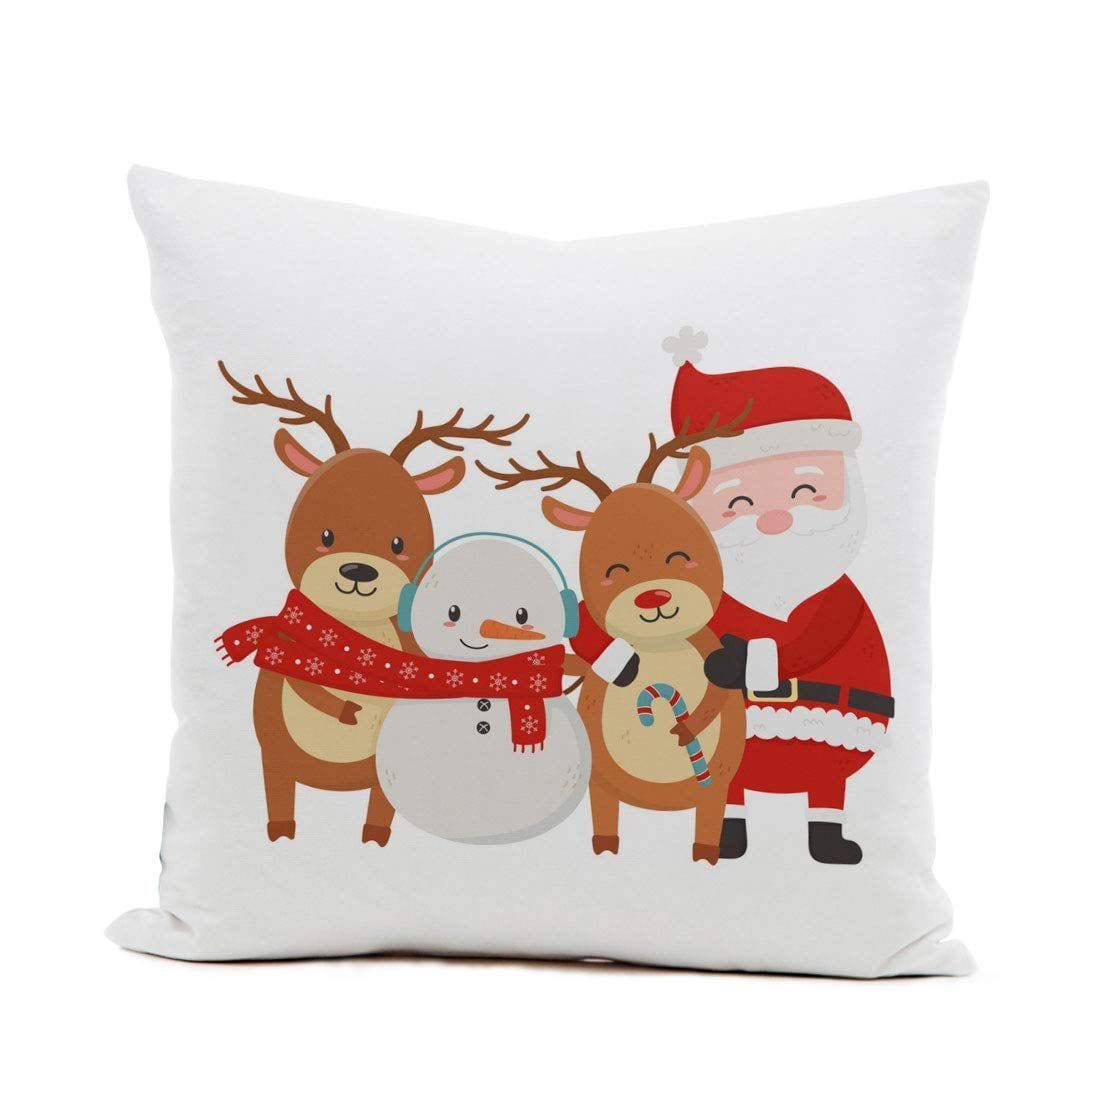 Merry Christmas Cushion V4 - YuvaFlowers